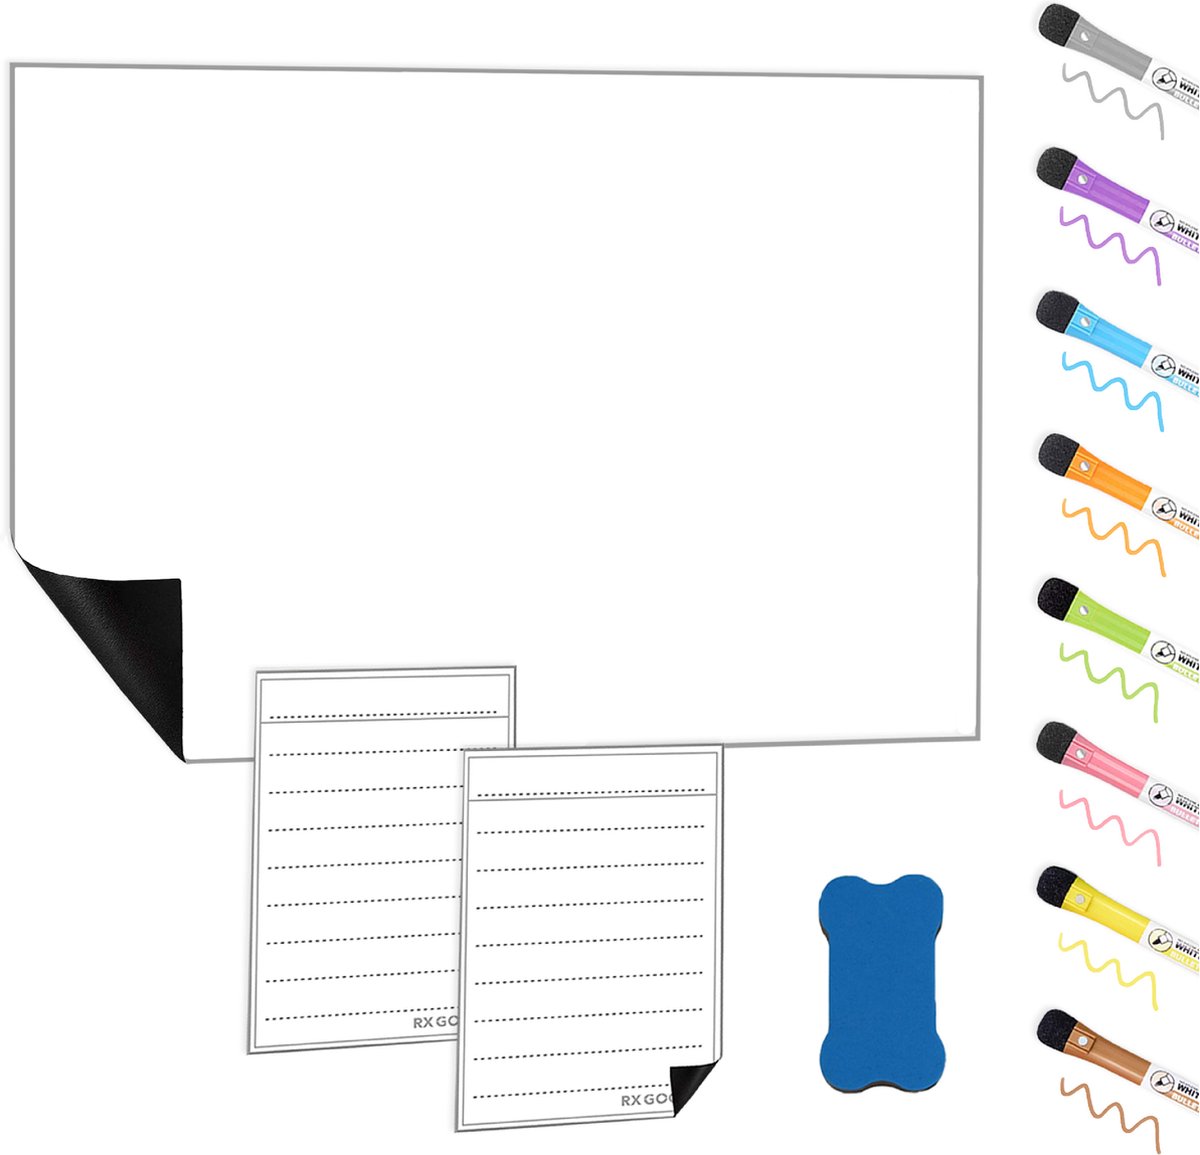 RX Goods Magnetische Whiteboard Koelkast Set met 8 Markers & Wisser – Memobord, Planbord, Schrijfbord & to do planner - RX Goods